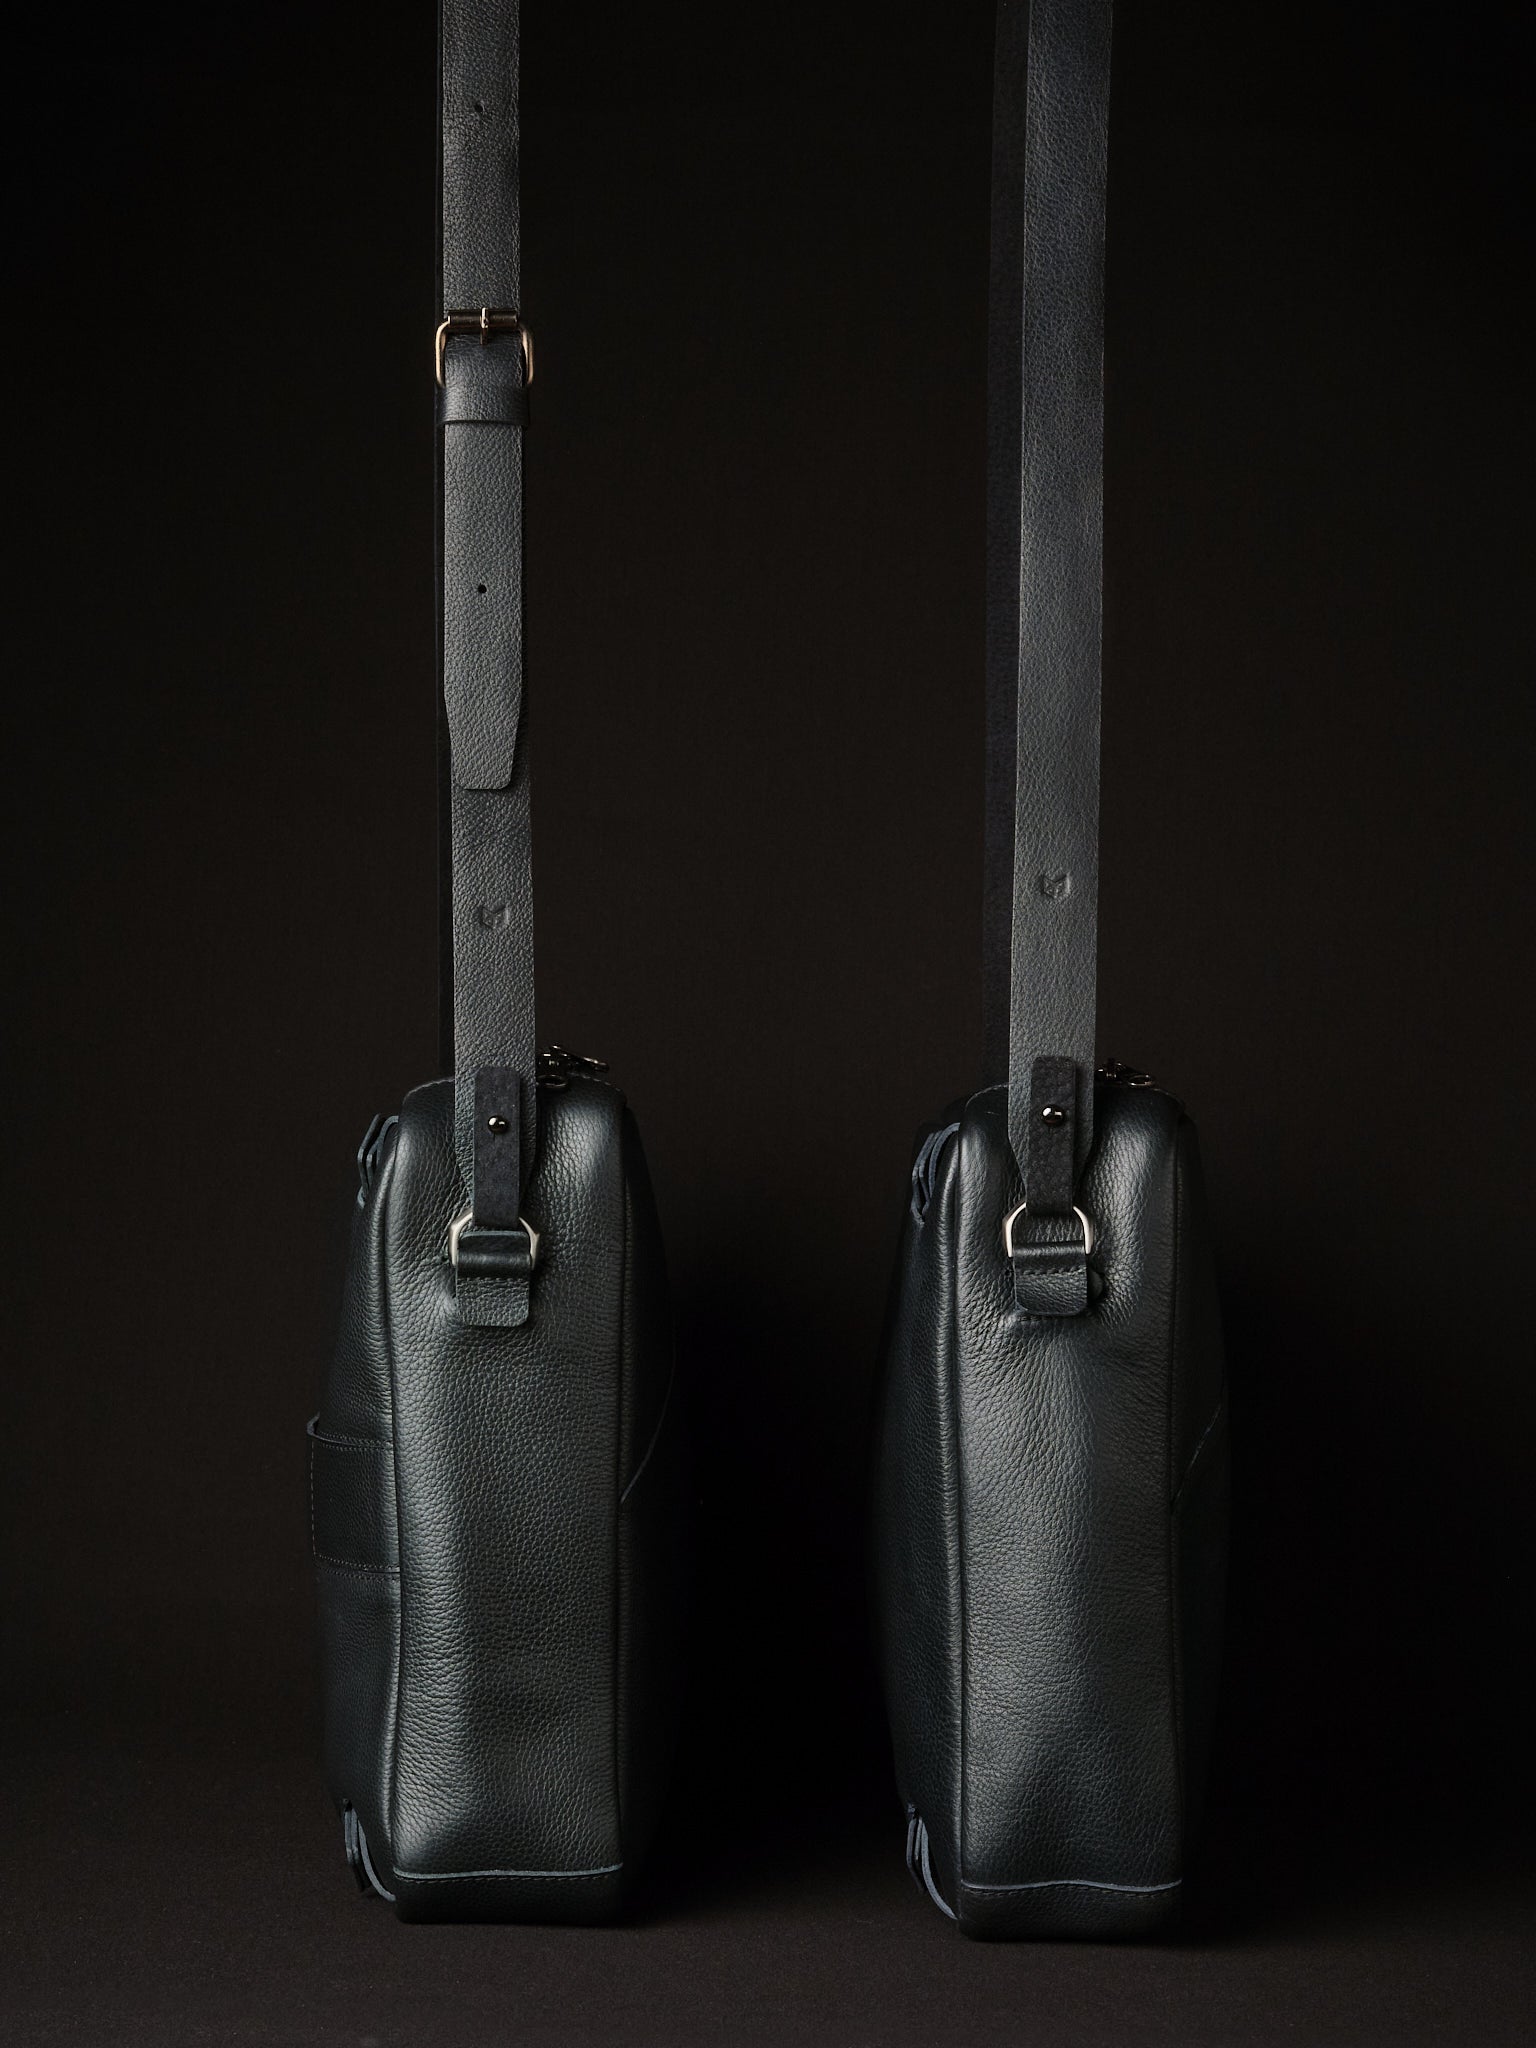 Optional Adjustable Shoulder Strap. Black Leather Briefcases by Capra